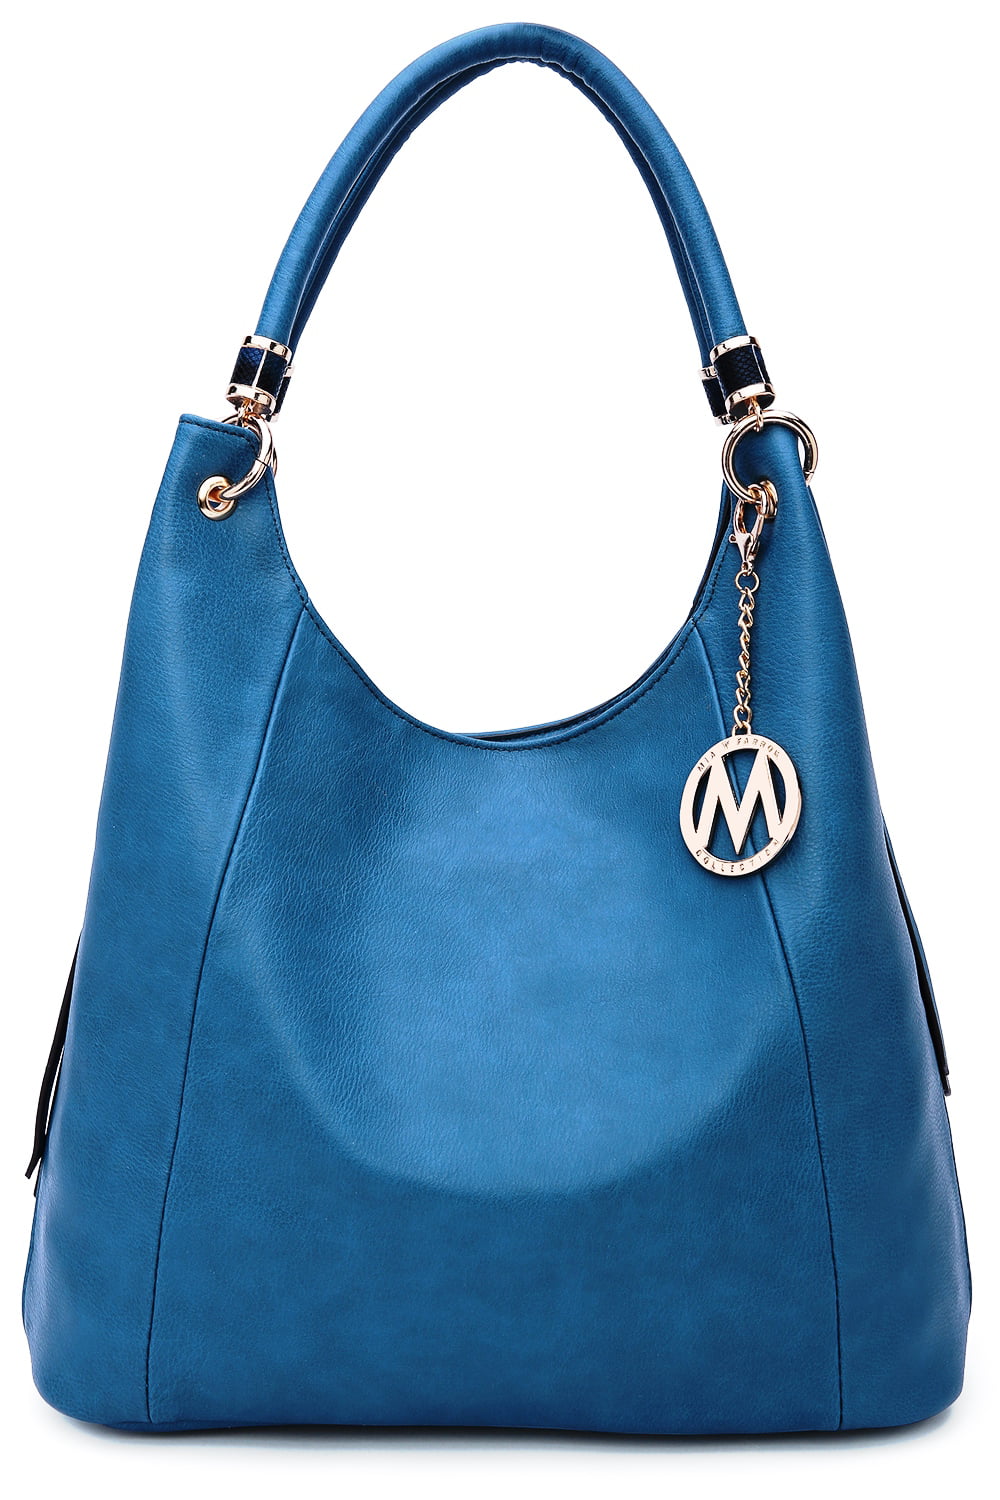 MKF - April Designer Hobo Shoulder bag - 0